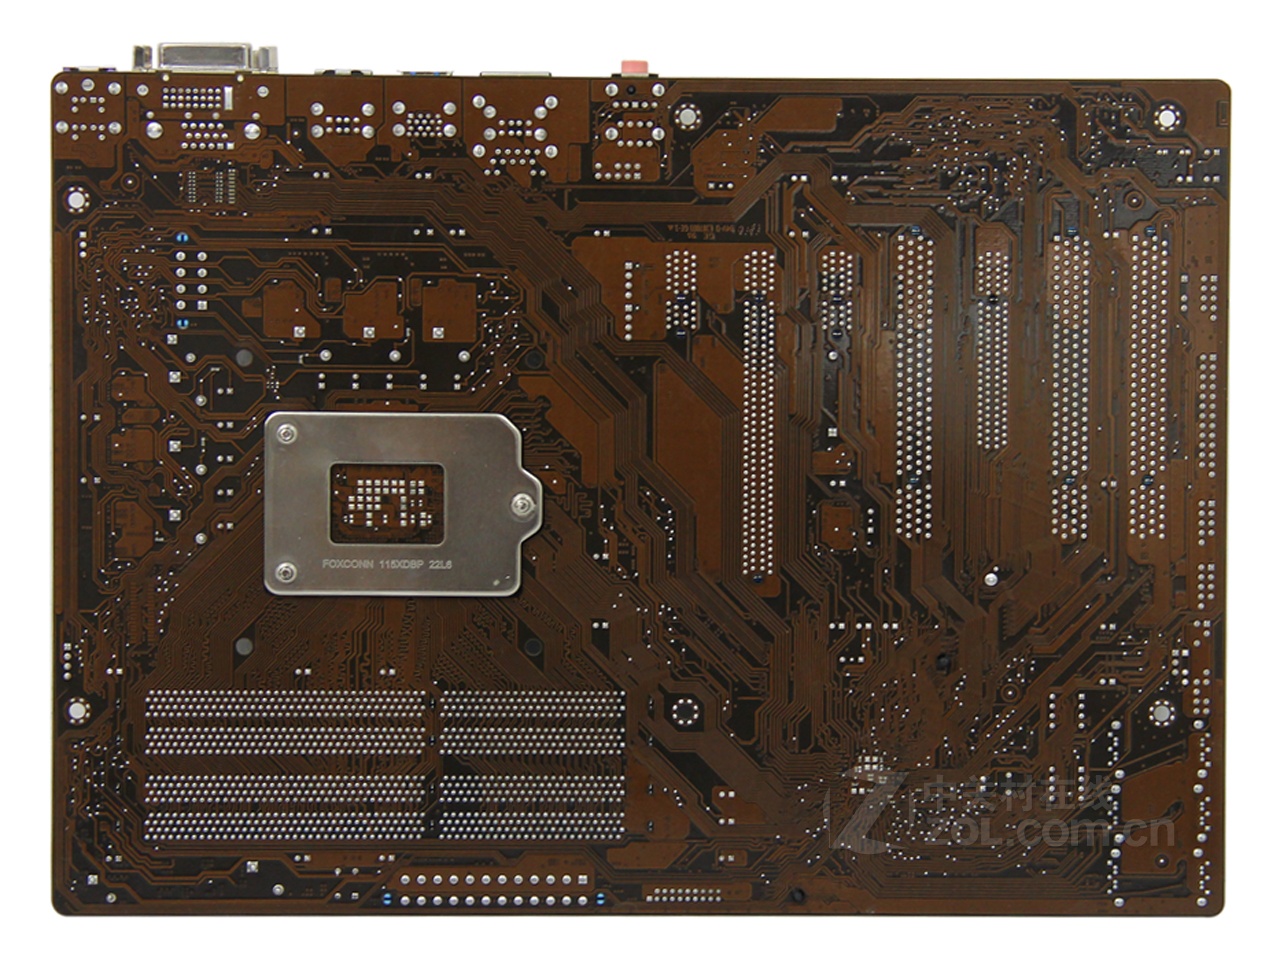 升级电脑主板，选择 DDR3 内存条，体验高效流畅的运行速度